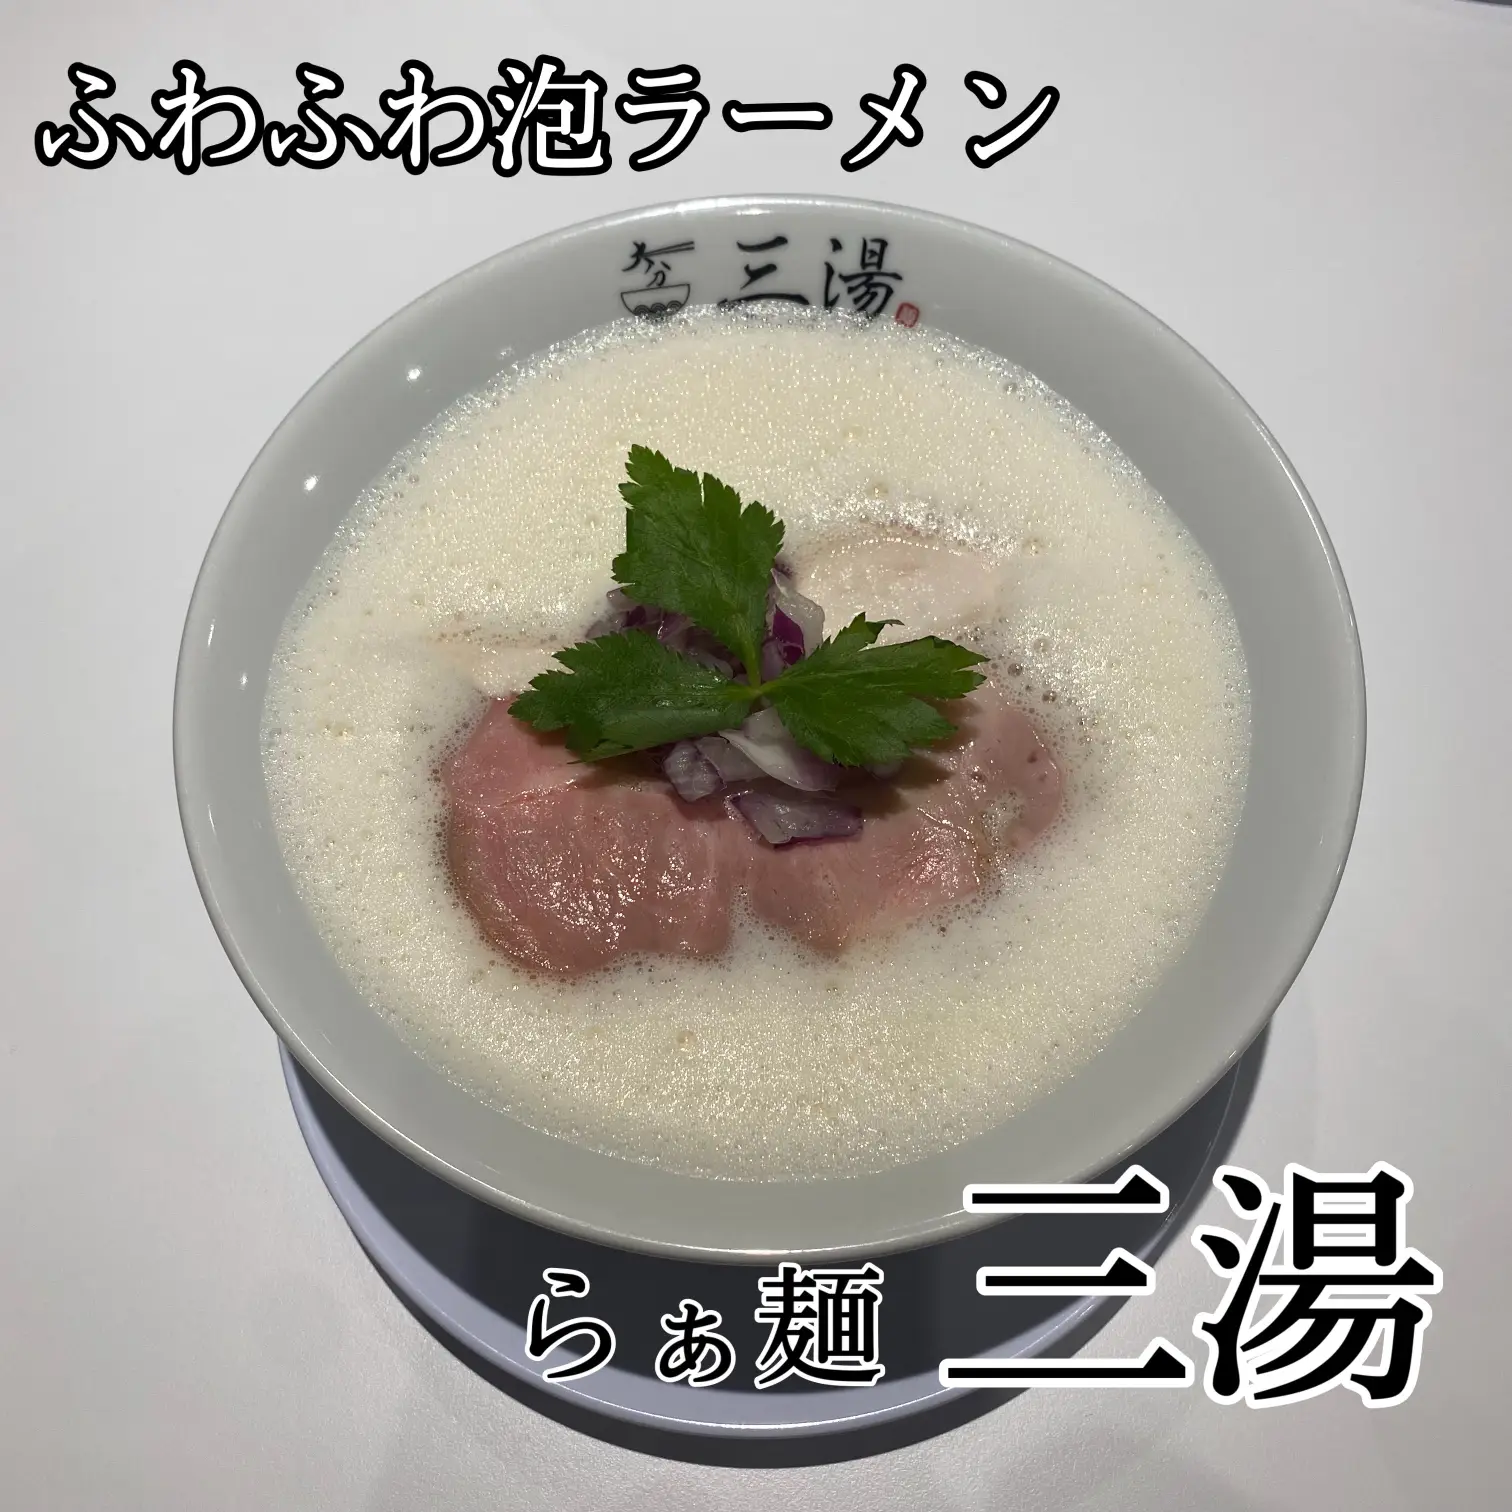 らぁ麺三湯santan - Lemon8検索